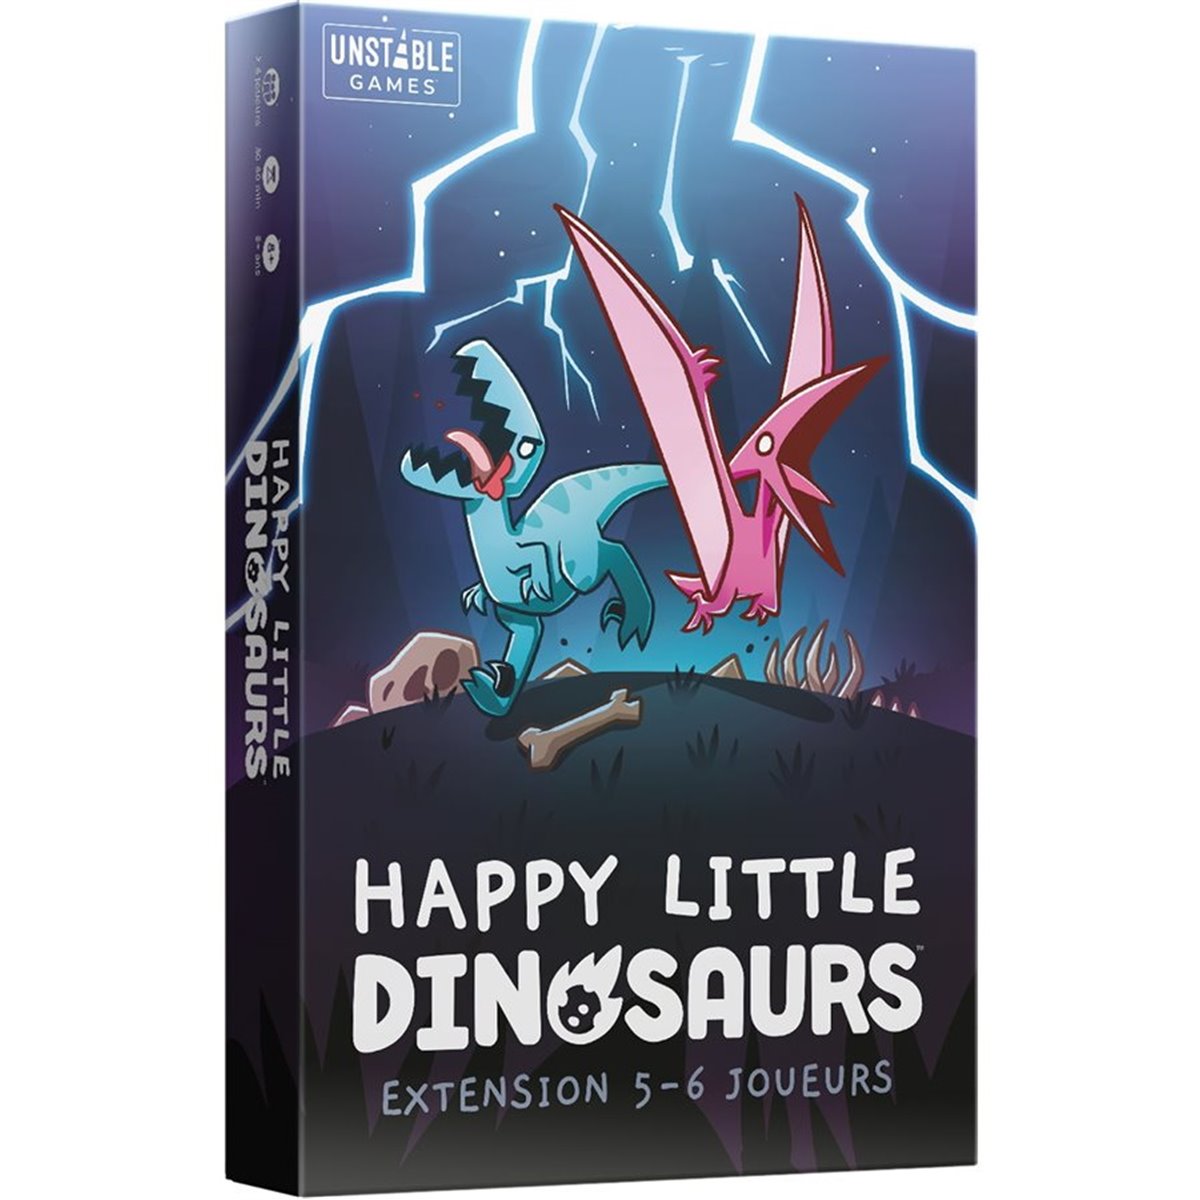 Happy Little Dinosaurs - Puberté dangereuse